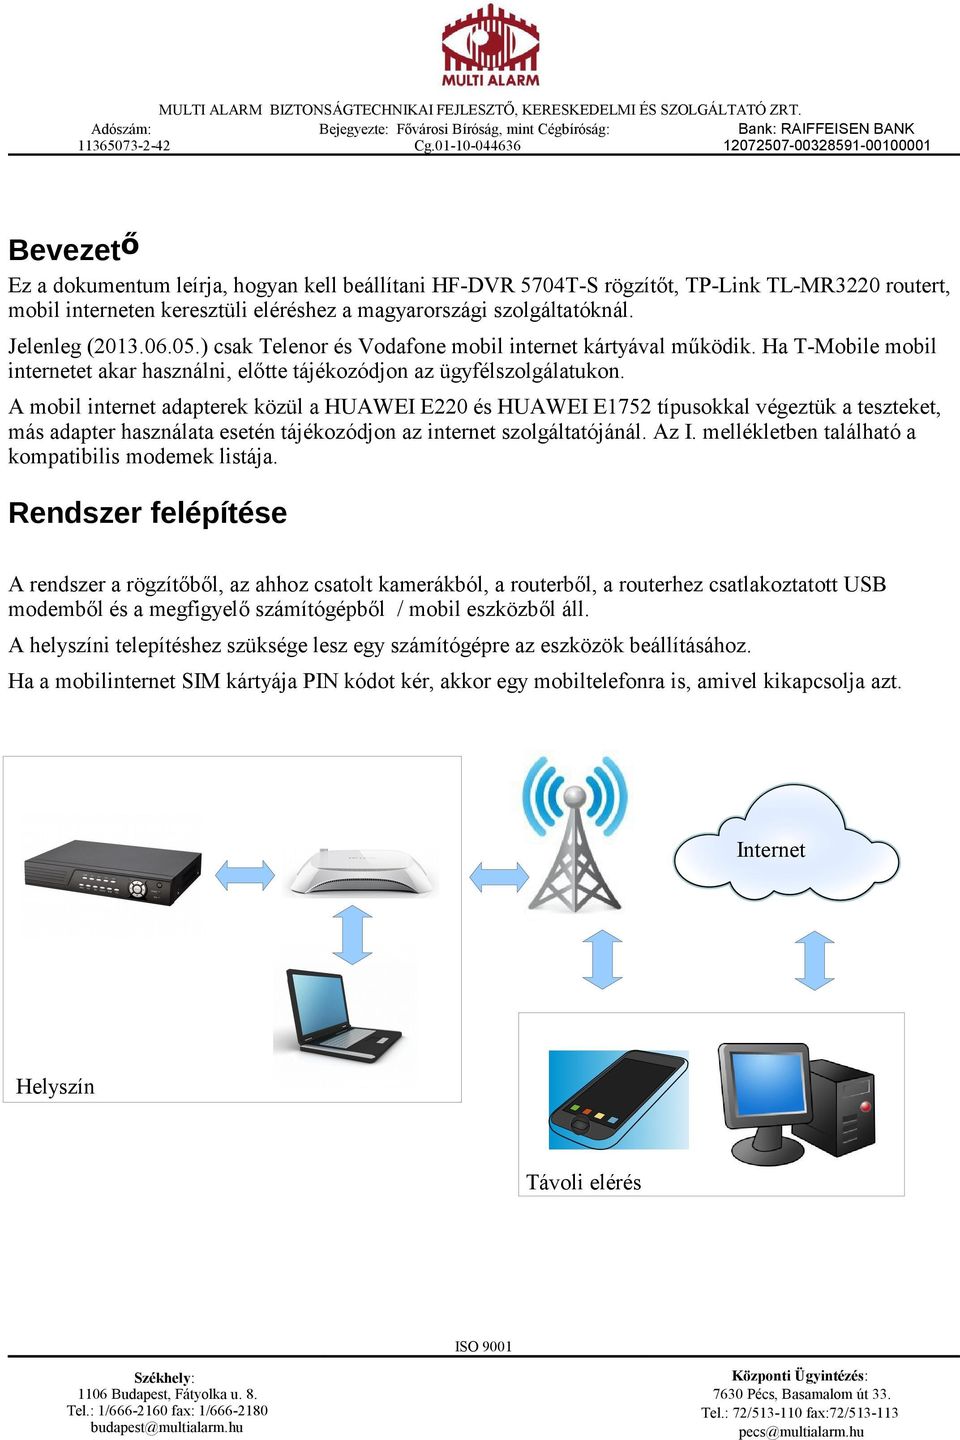 HF-DVR Rögzítő TP-Link TL-MR3220 Router CMS, MEYE, VMEYE beállítása - PDF  Free Download